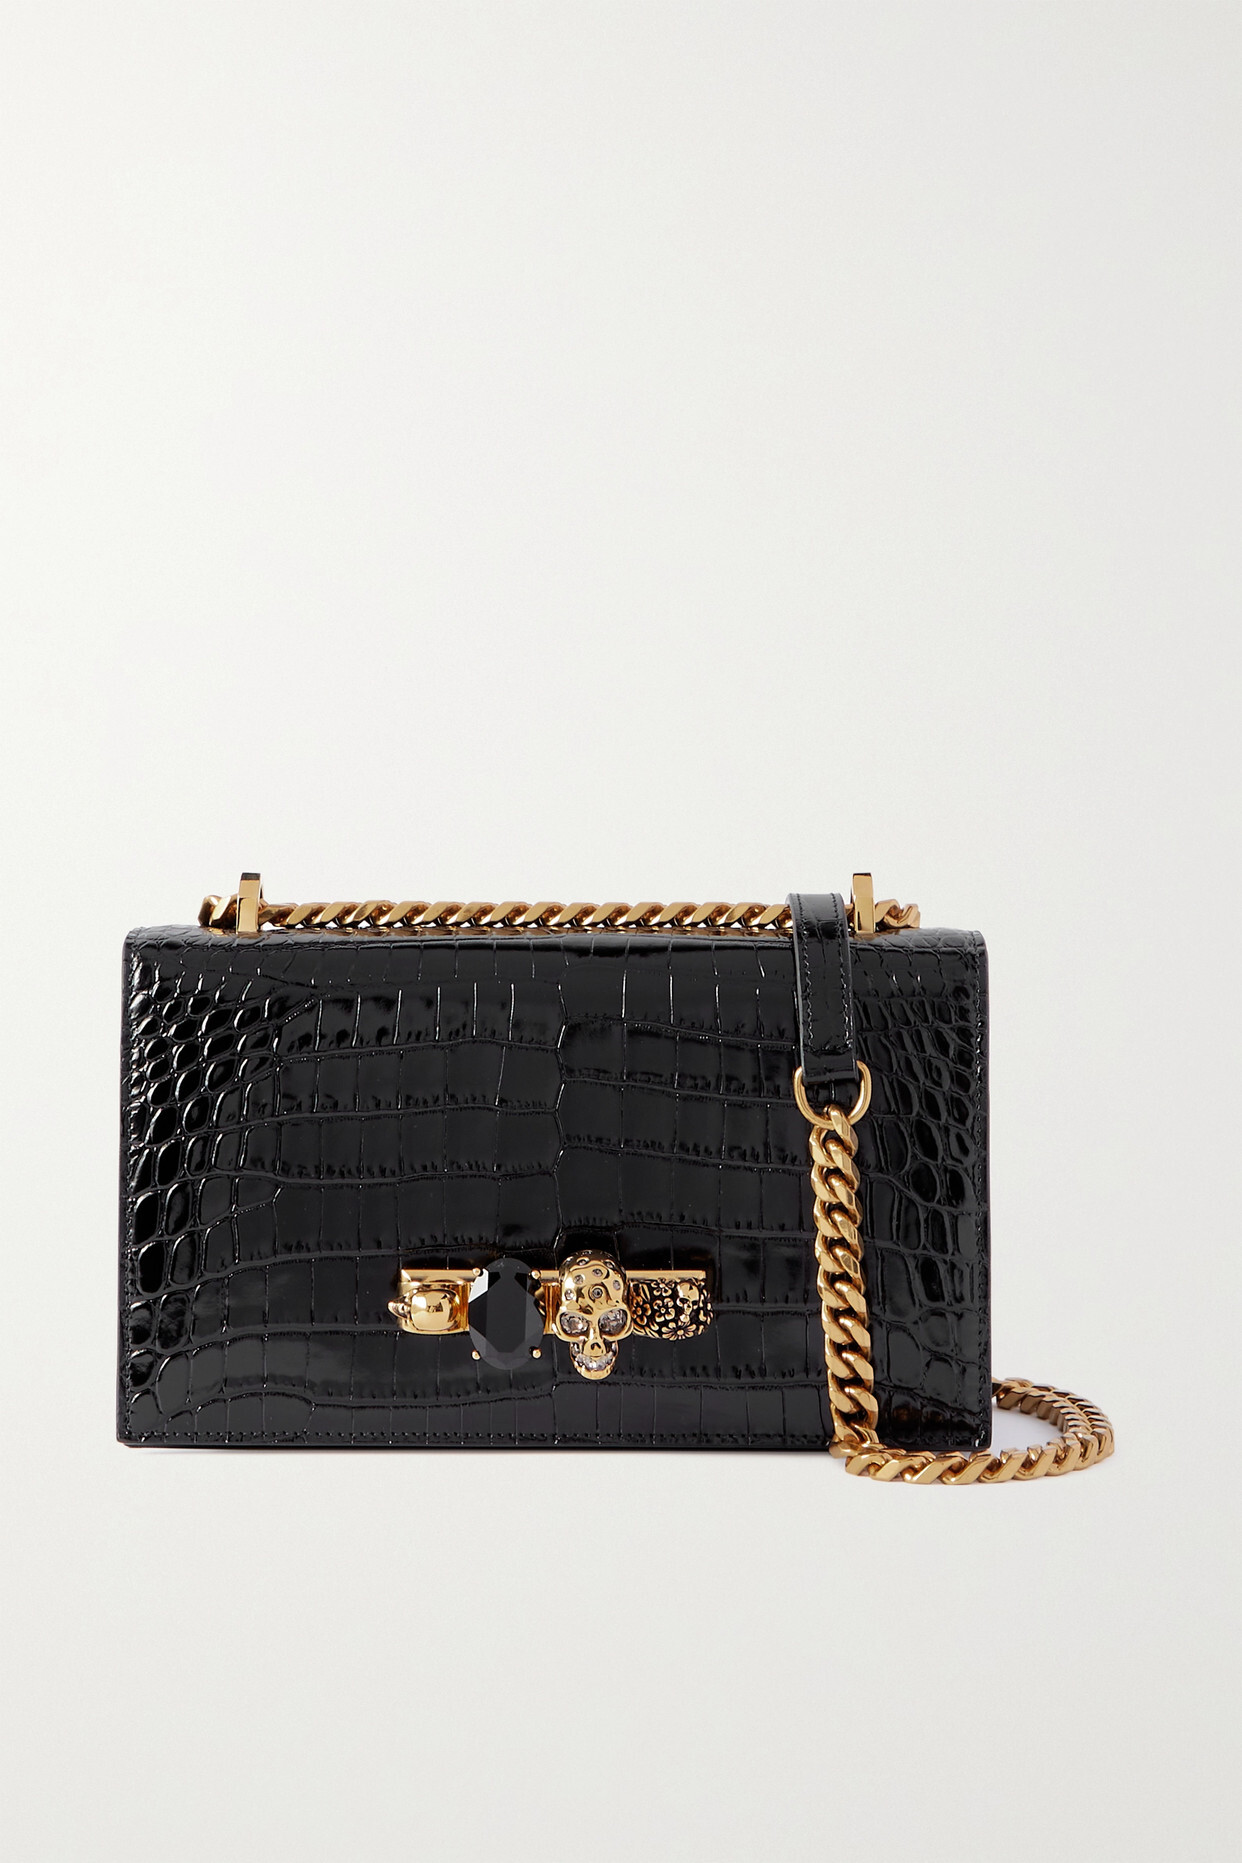 Alexander McQueen - Jewelled Satchel Embellished Croc-effect Leather Shoulder Bag - Black